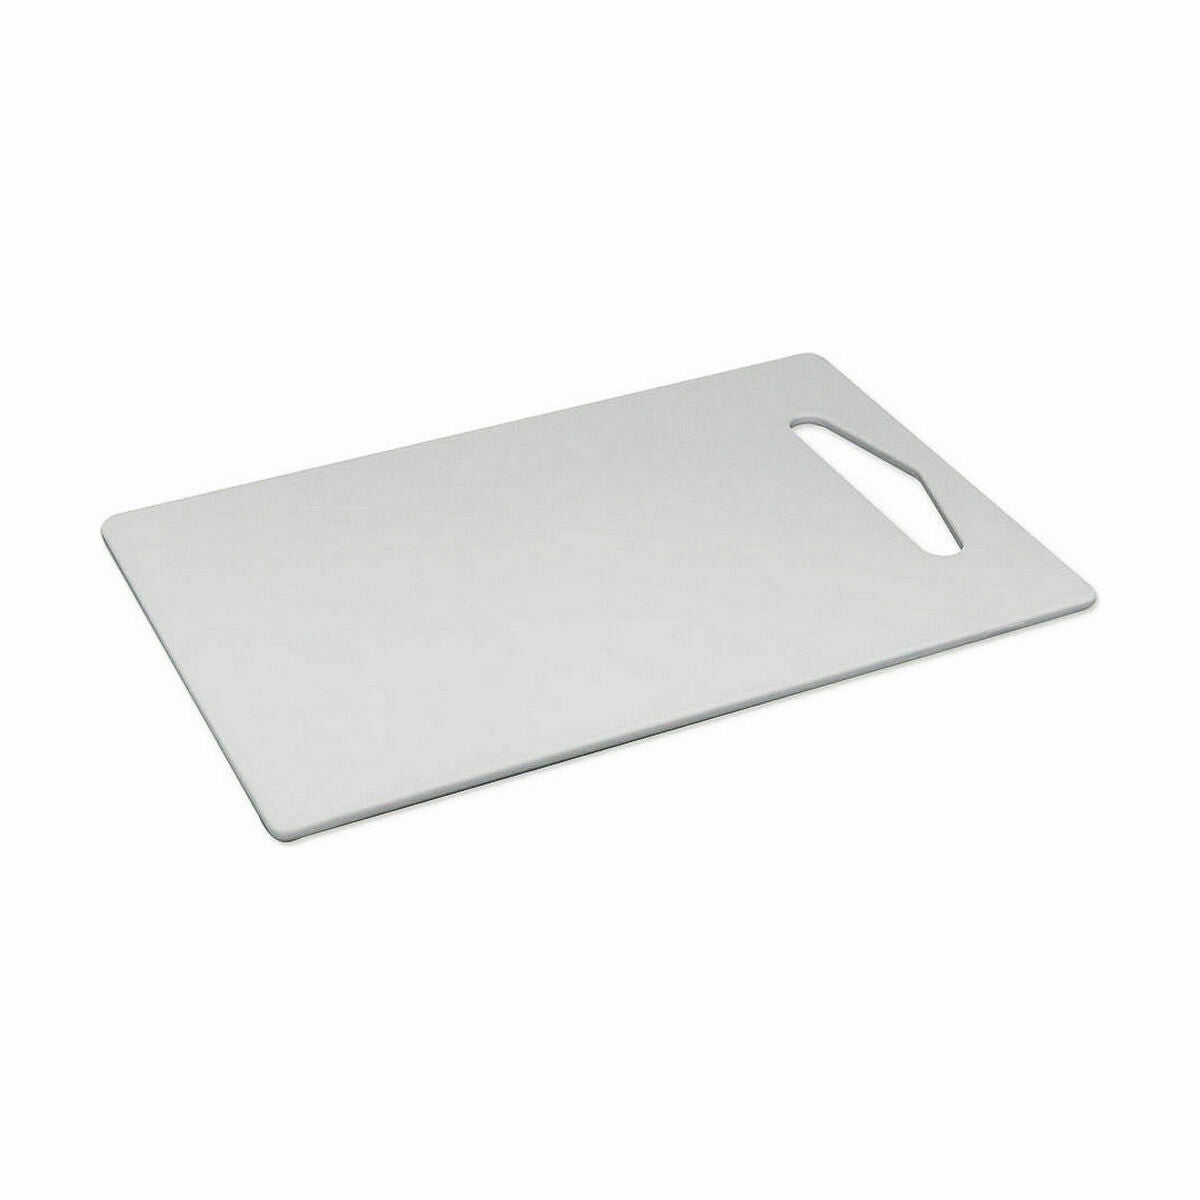 Cutting board Dem 25 x 16 x 0,5 cm (36 Units)